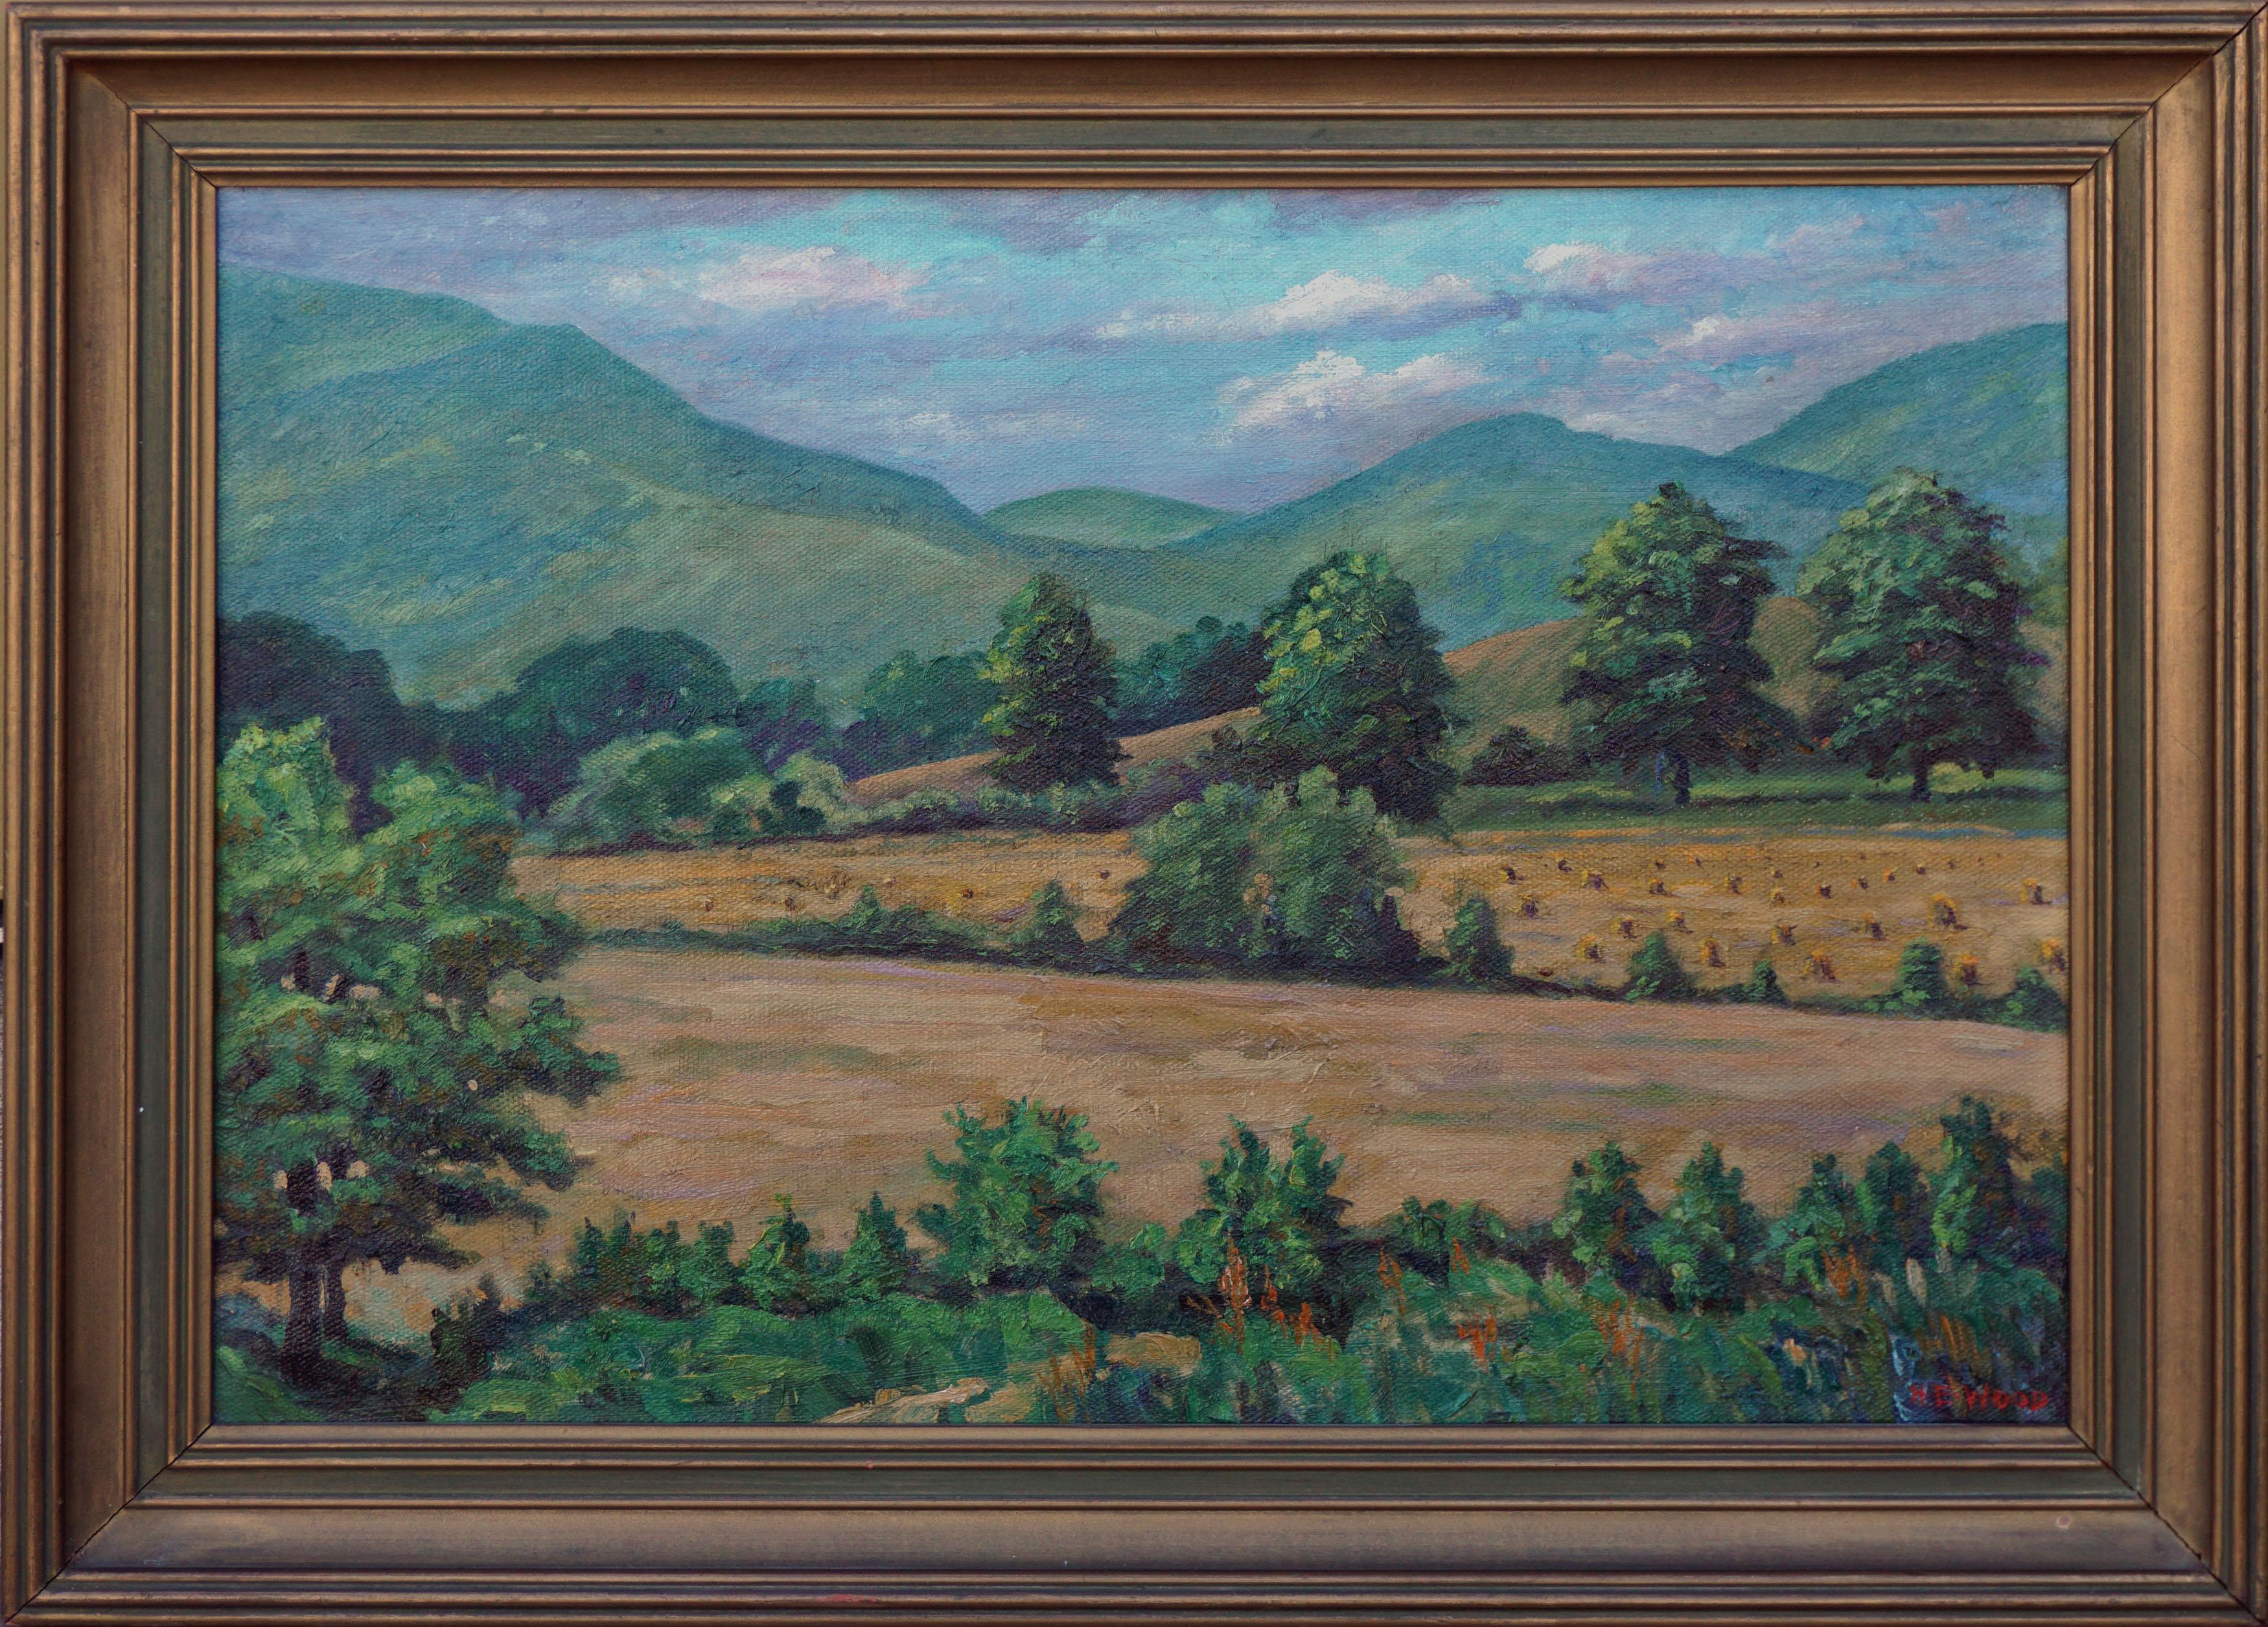 Harry (Emsley) Wood, Sr. Landscape Painting – Arts and Craft Hills and Haystacks Landschaft aus der Mitte des Jahrhunderts